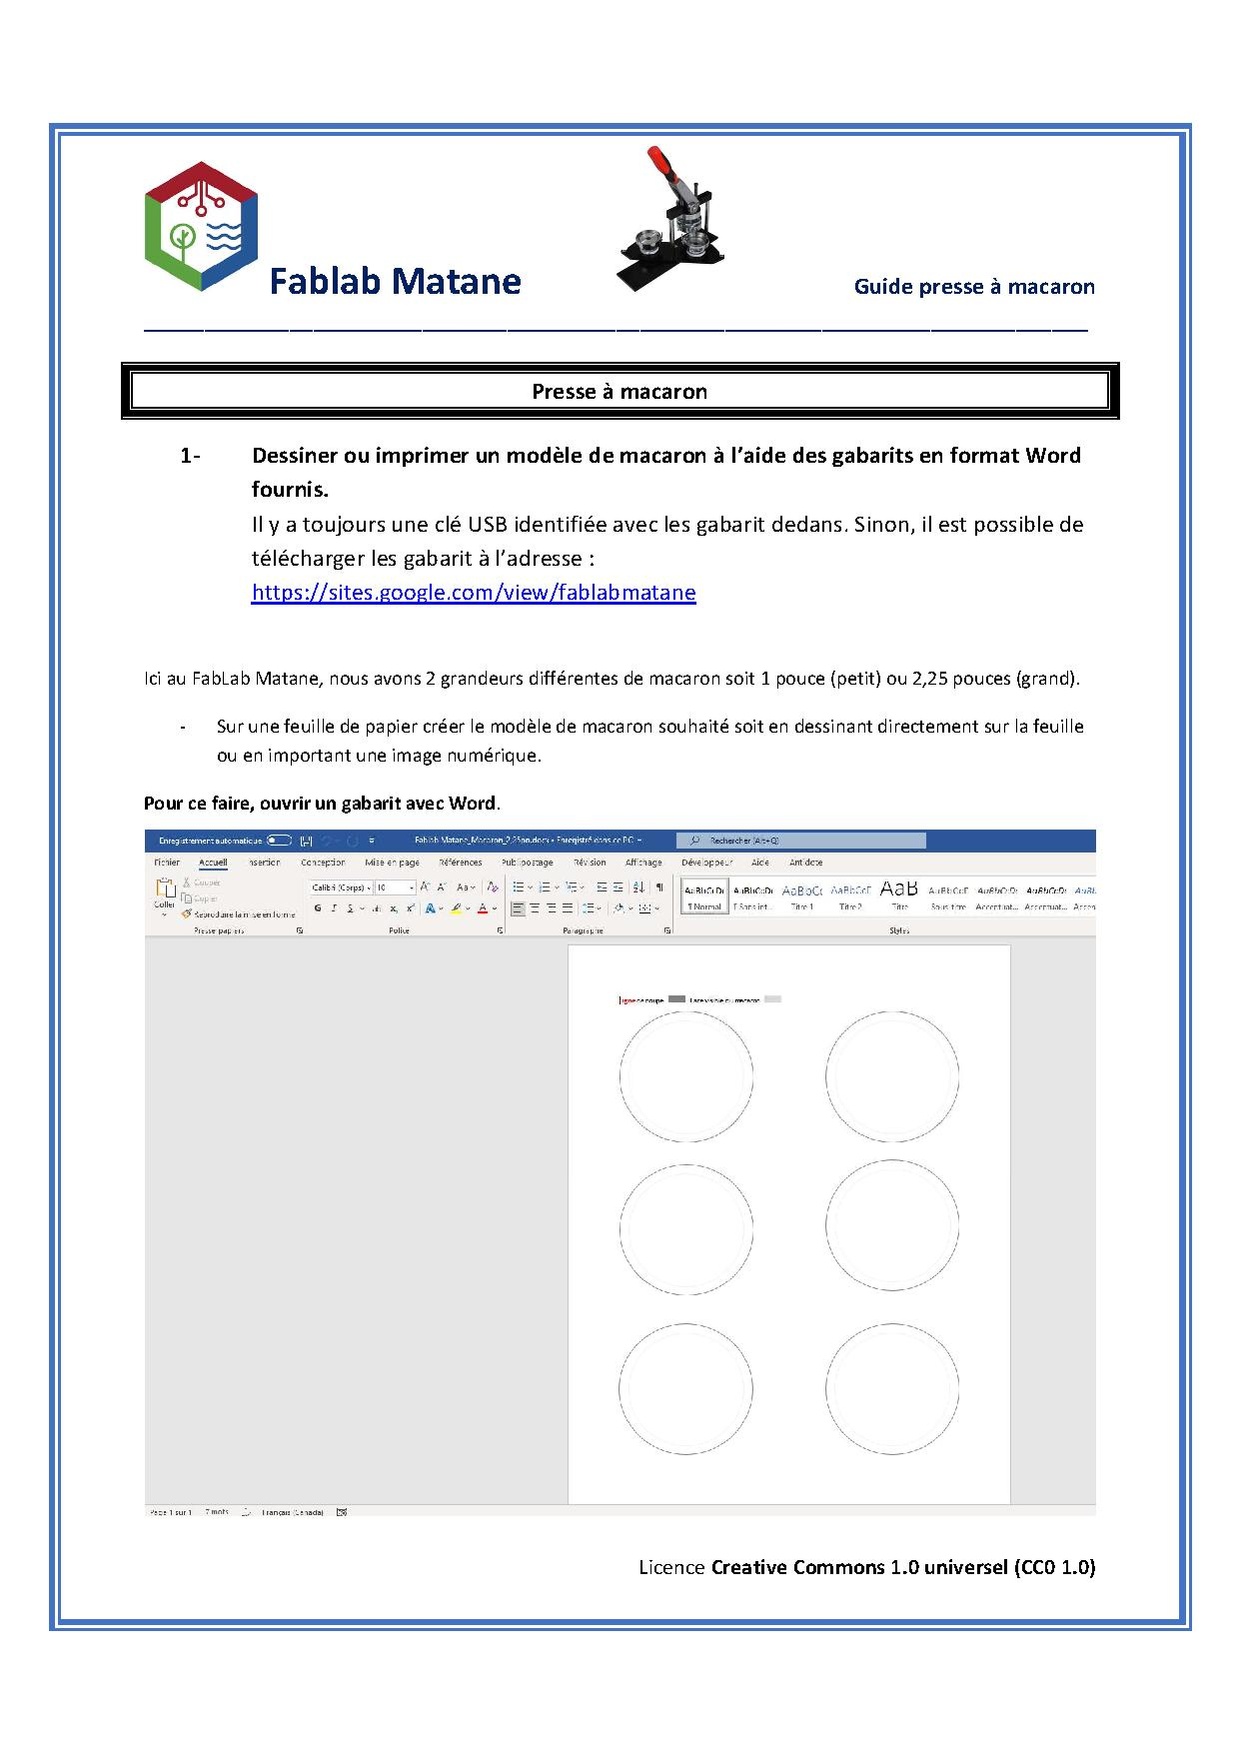 Guide pour Macaron-420900 par FabLAB Matane.pdf